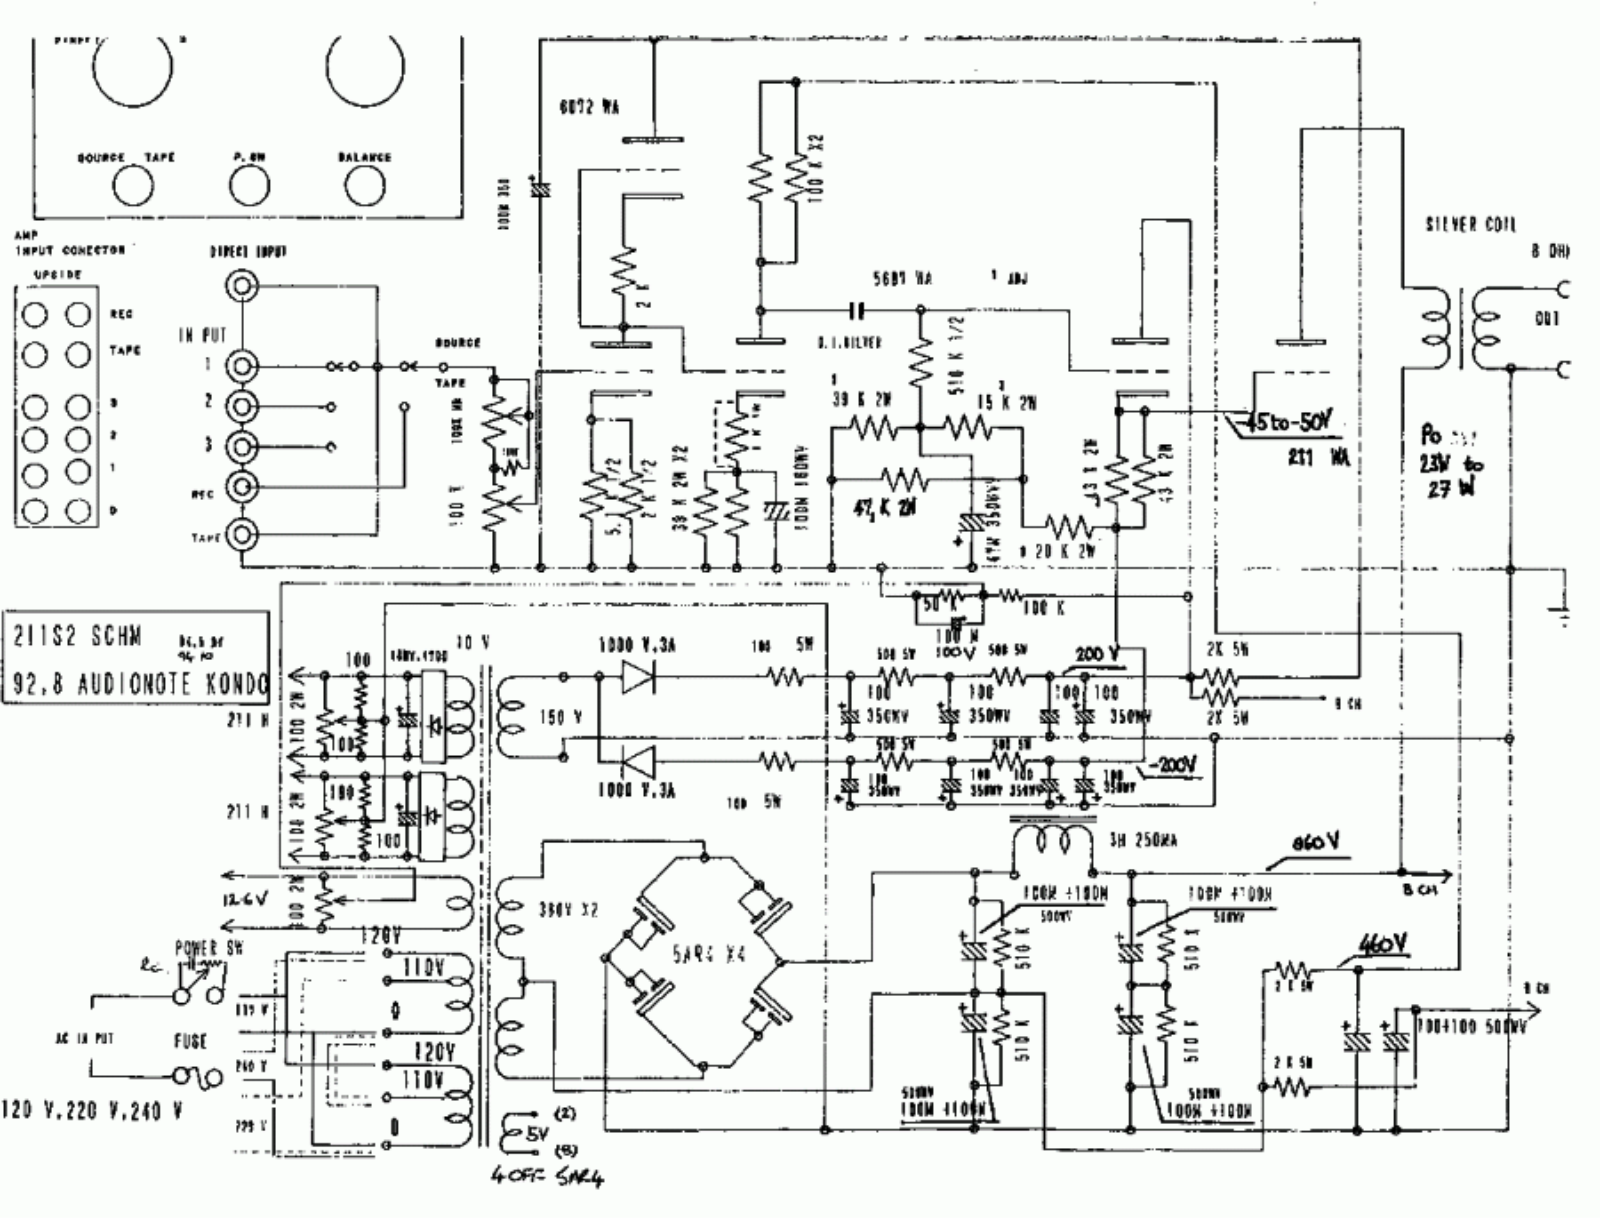 Audionote ongaku schematic